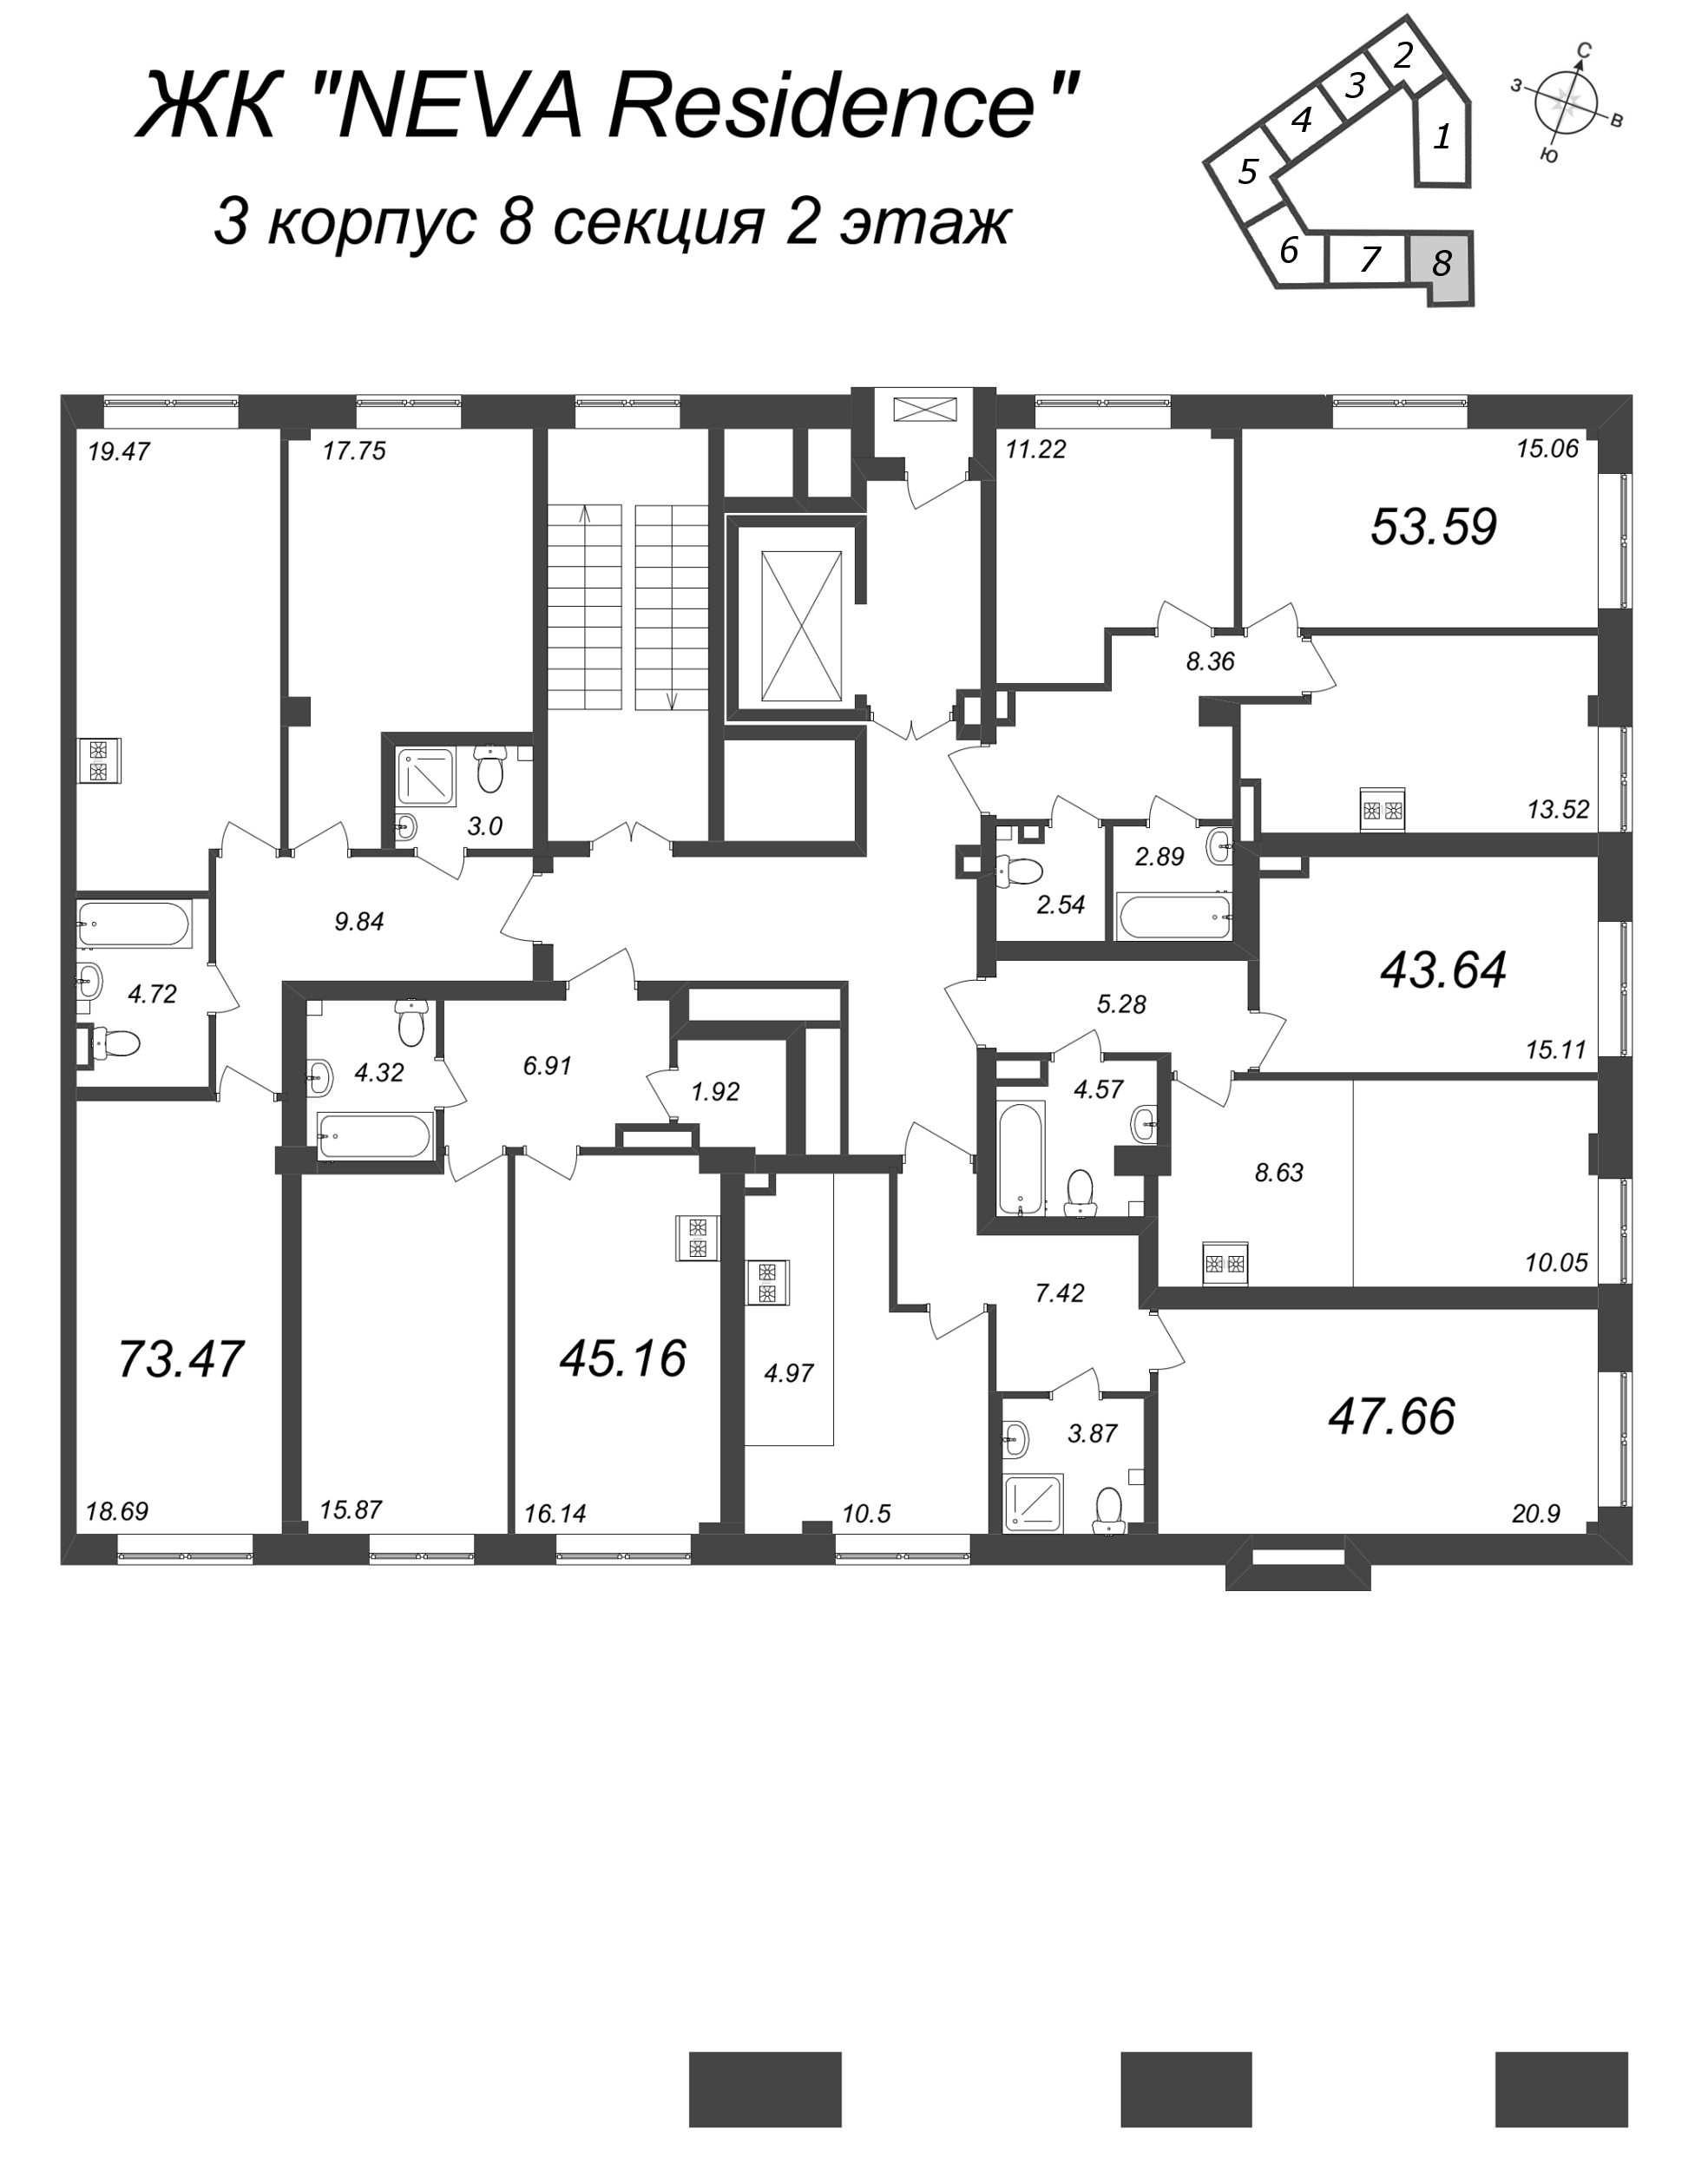 3-комнатная (Евро) квартира, 73.47 м² в ЖК "Neva Residence" - планировка этажа